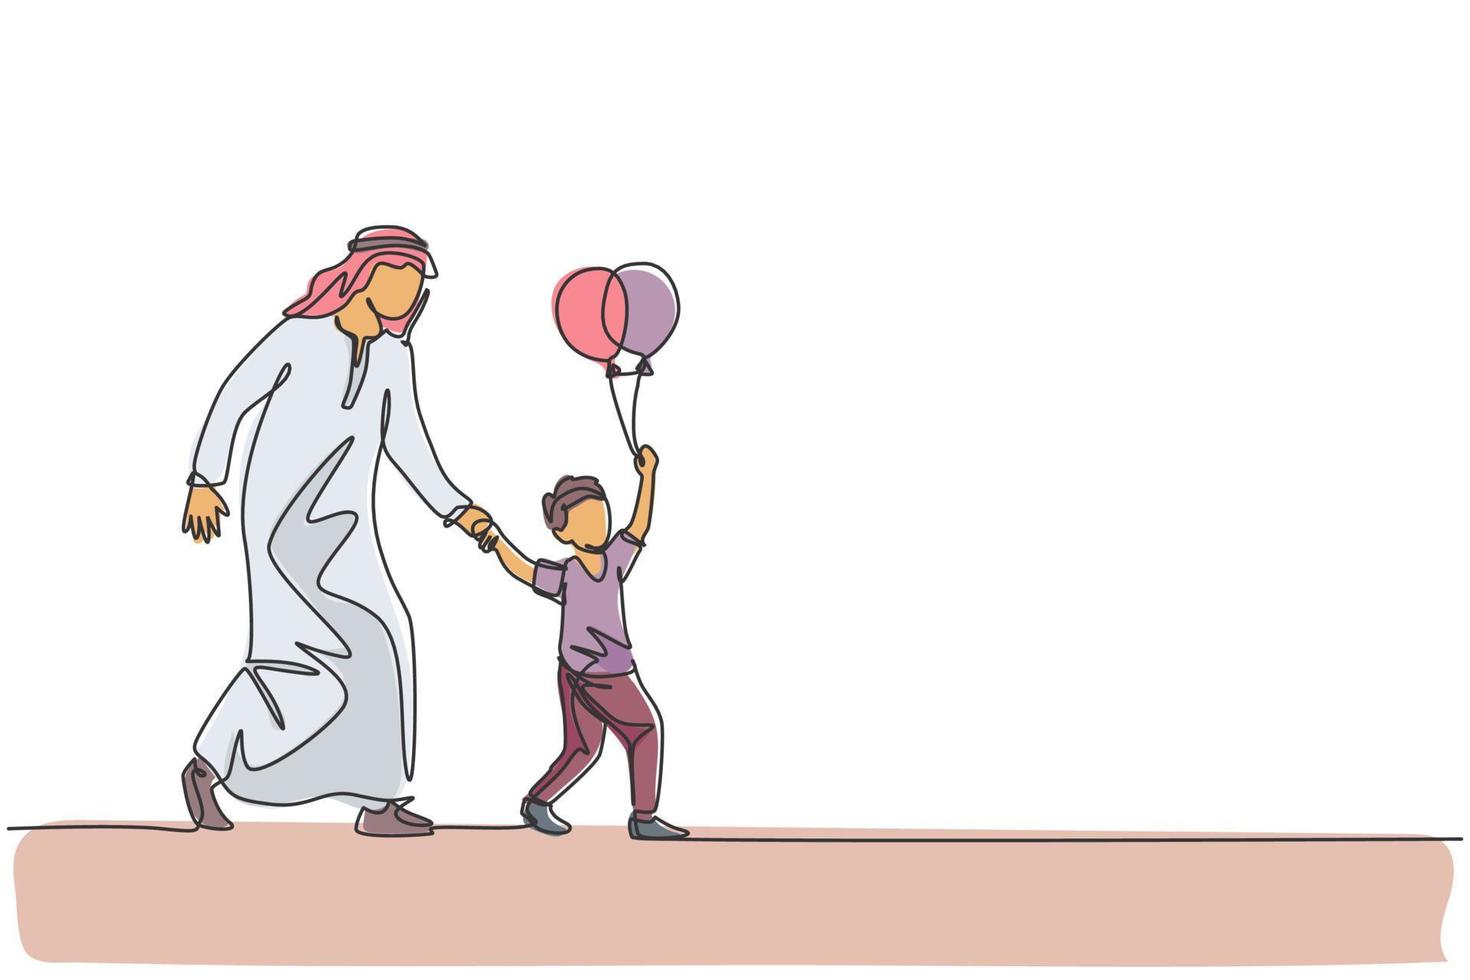 un unico disegno a tratteggio del giovane padre islamico accompagna suo figlio che tiene il pallone per giocare all'illustrazione vettoriale del parco di divertimenti. concetto di genitorialità familiare musulmana araba. disegno di disegno a linea continua